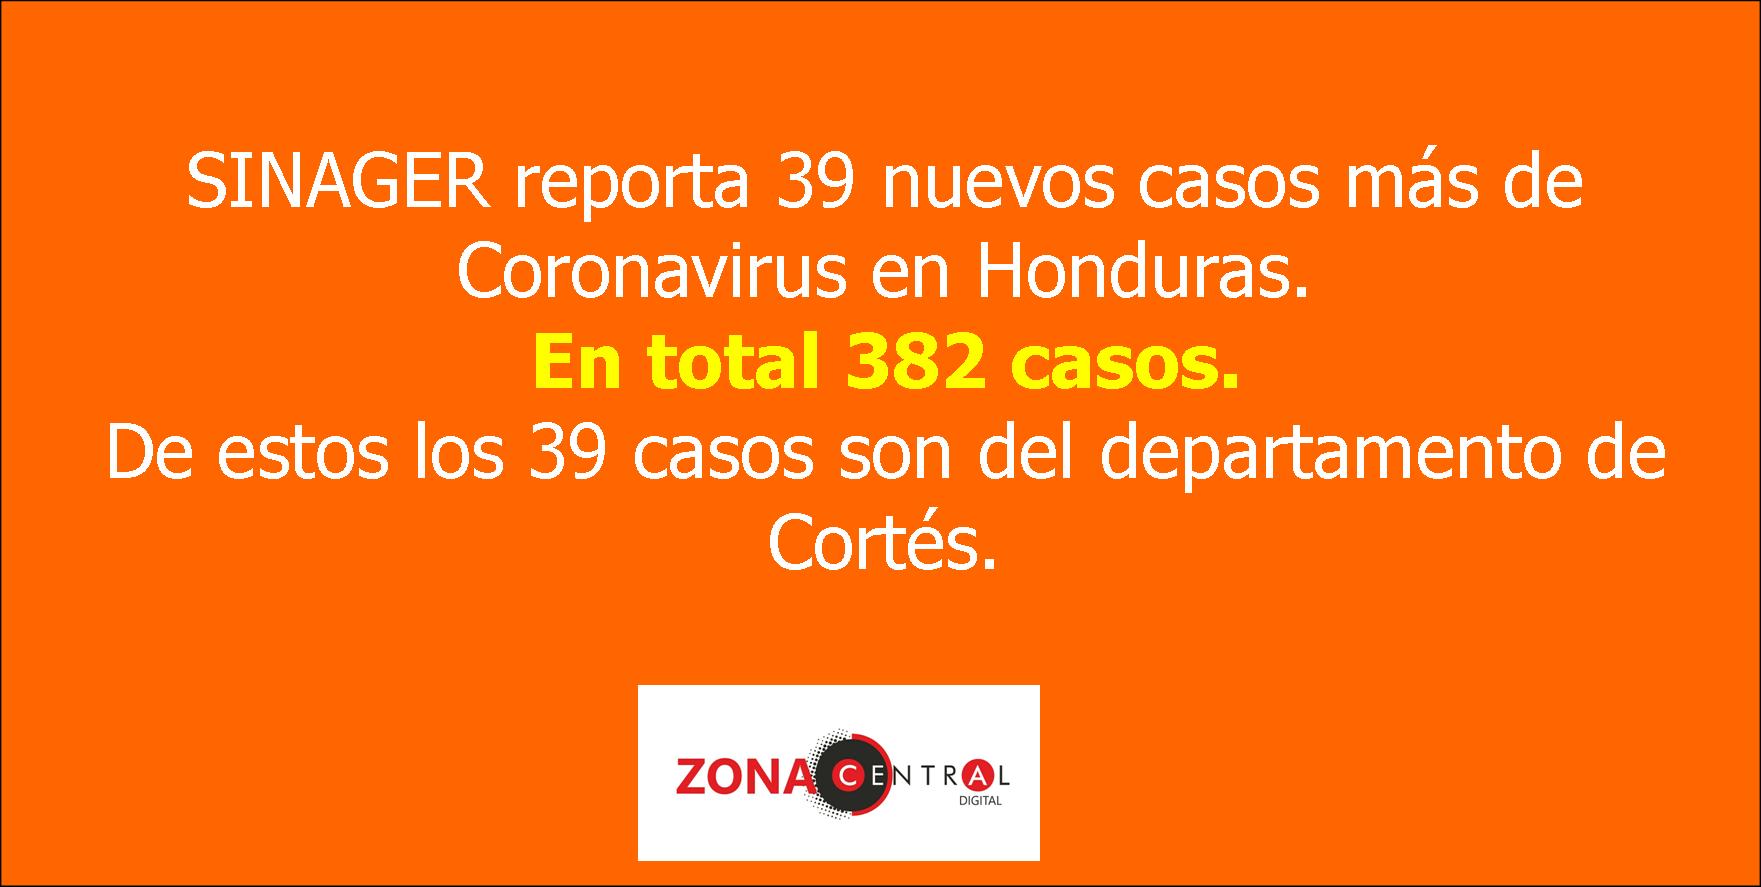 COMUNICADO #33: SINAGER reporta 39 casos de coronavirus en Honduras. En total 382 casos confirmados